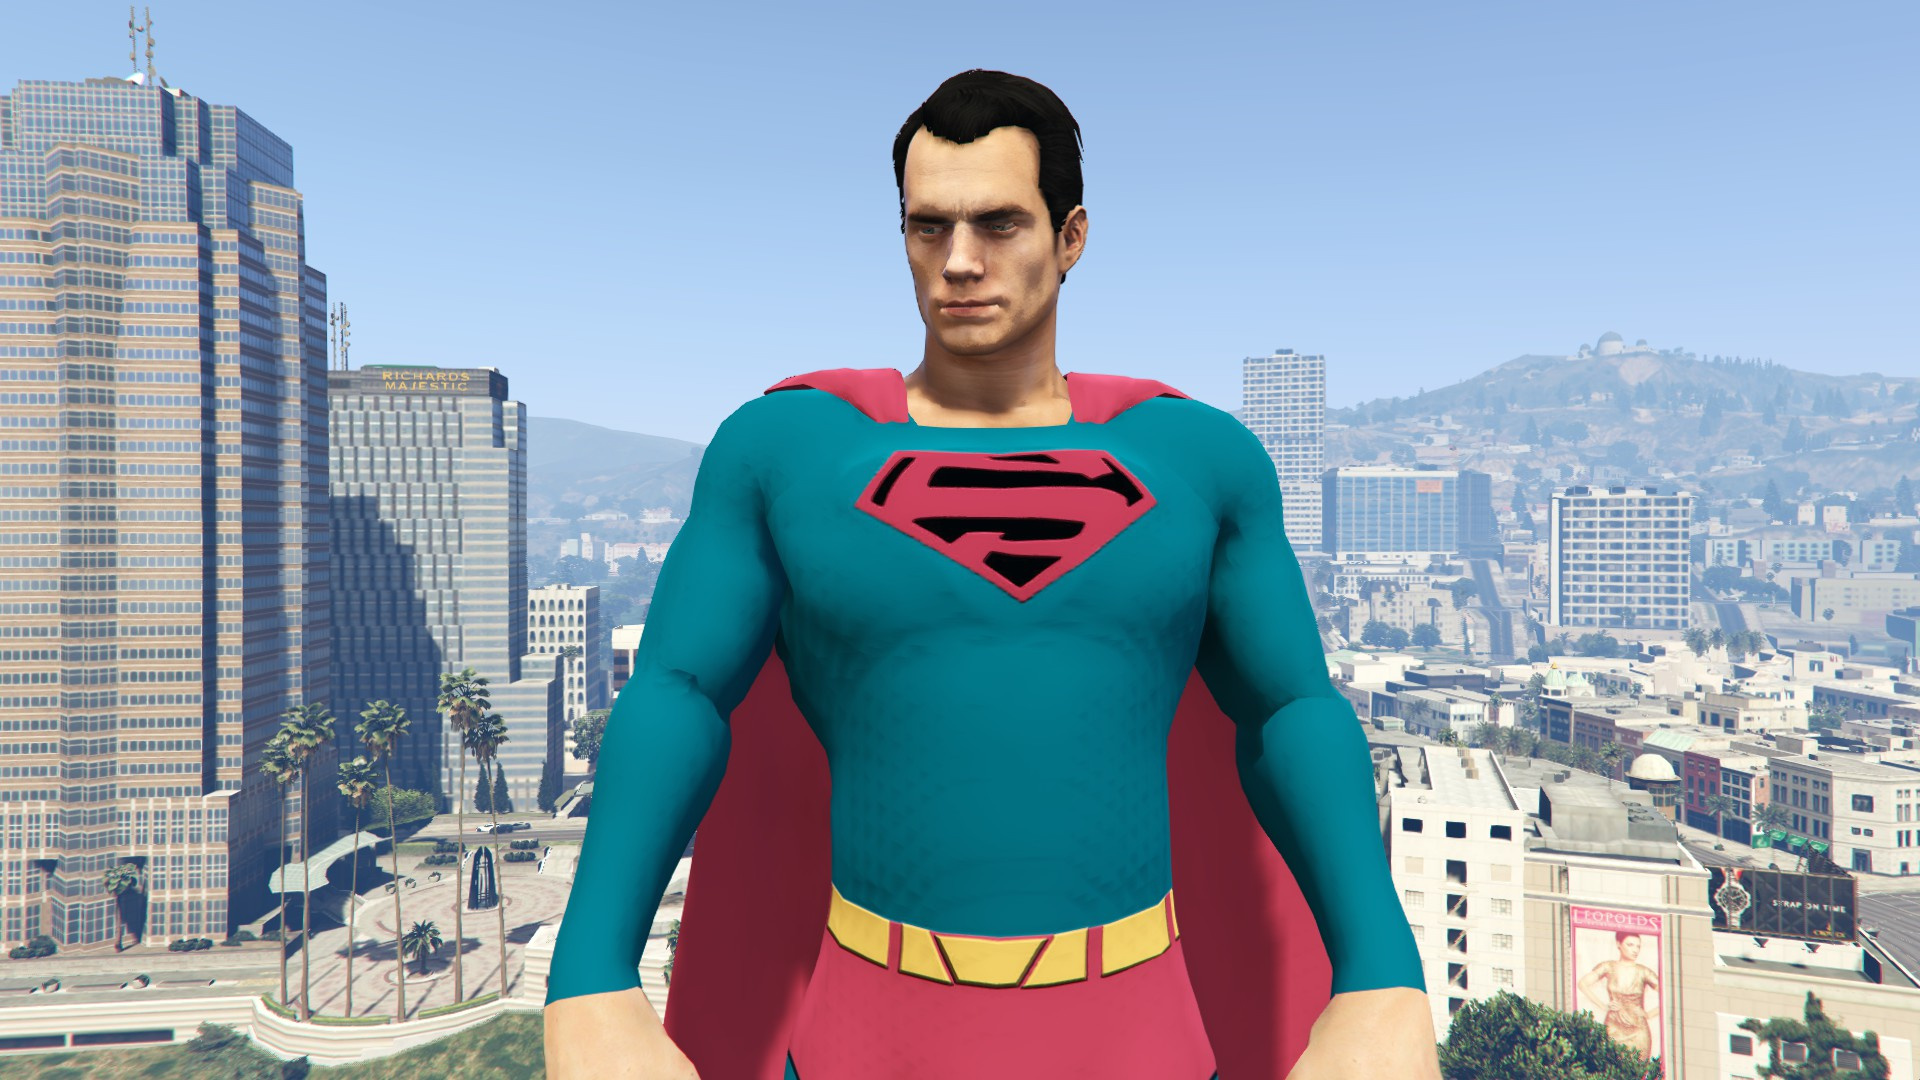 gta 5 superman mod august 2017